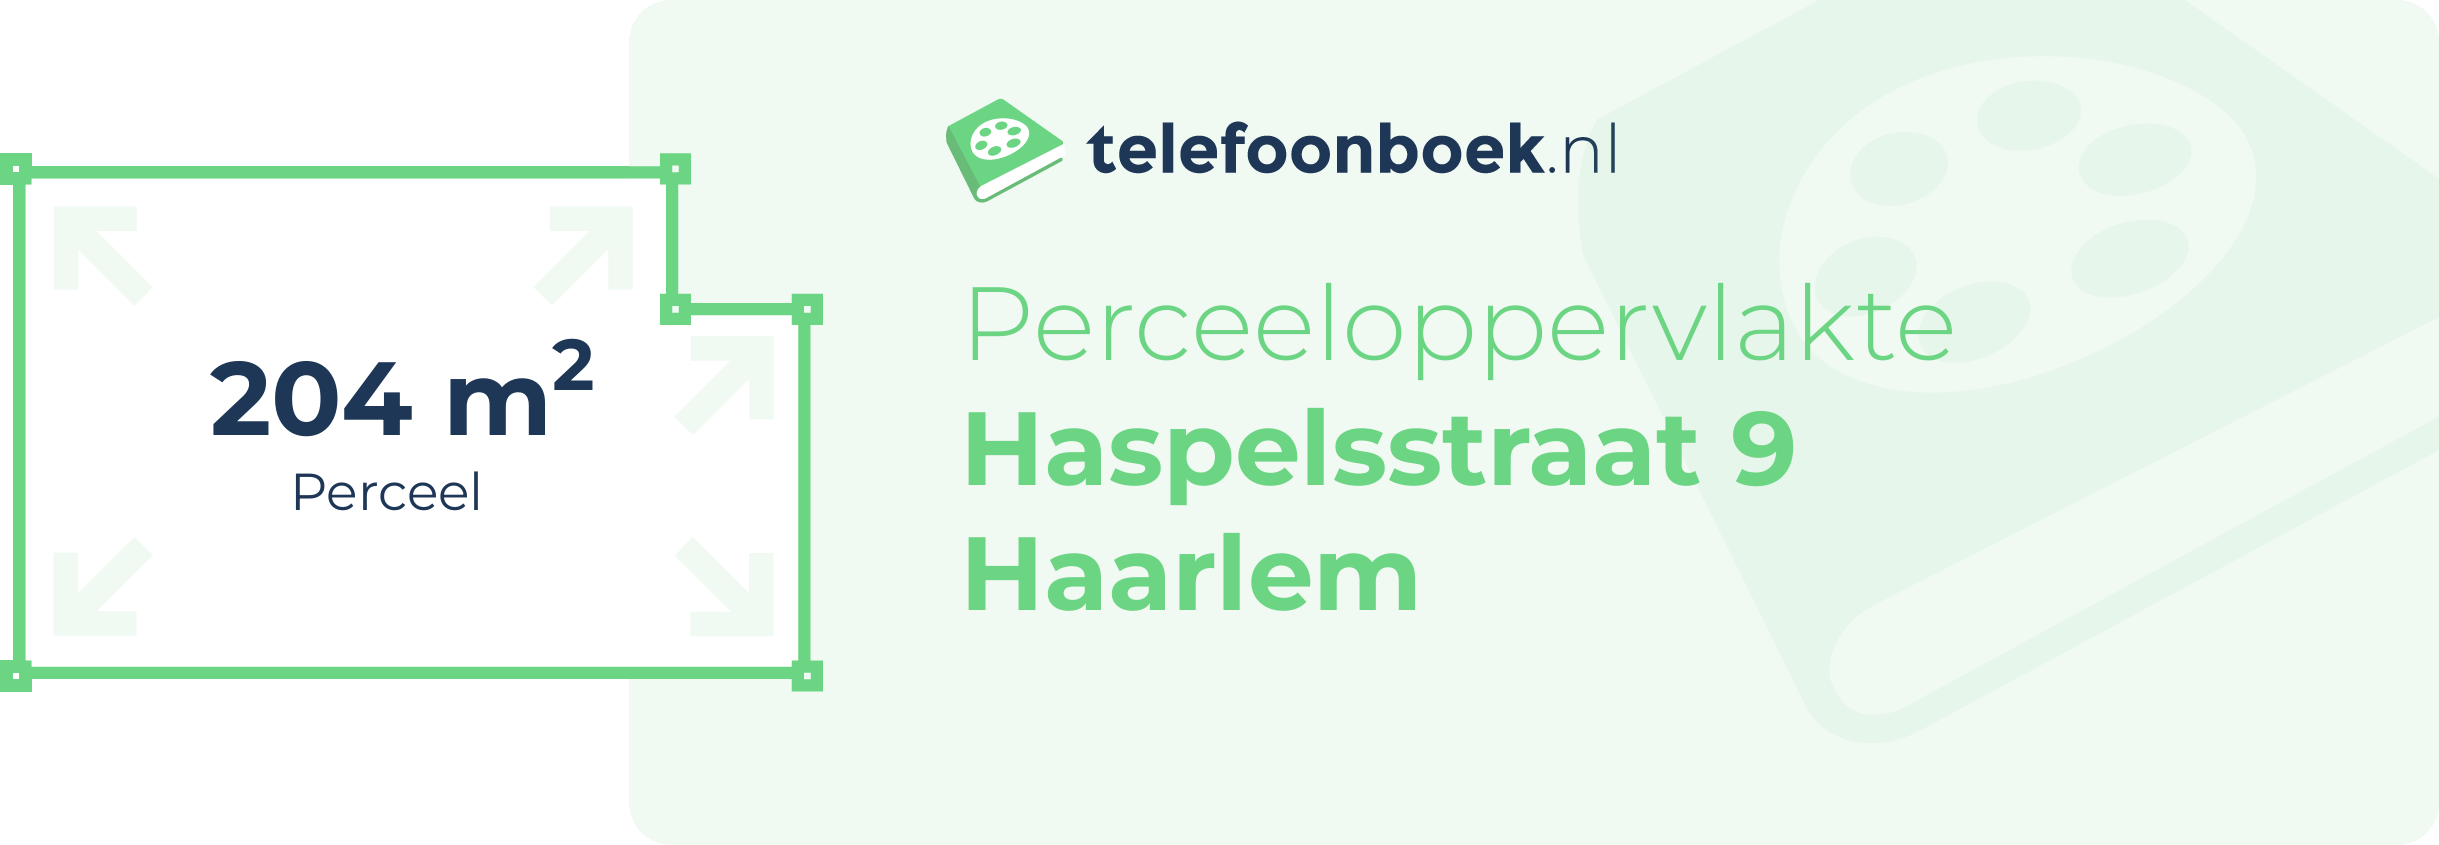 Perceeloppervlakte Haspelsstraat 9 Haarlem